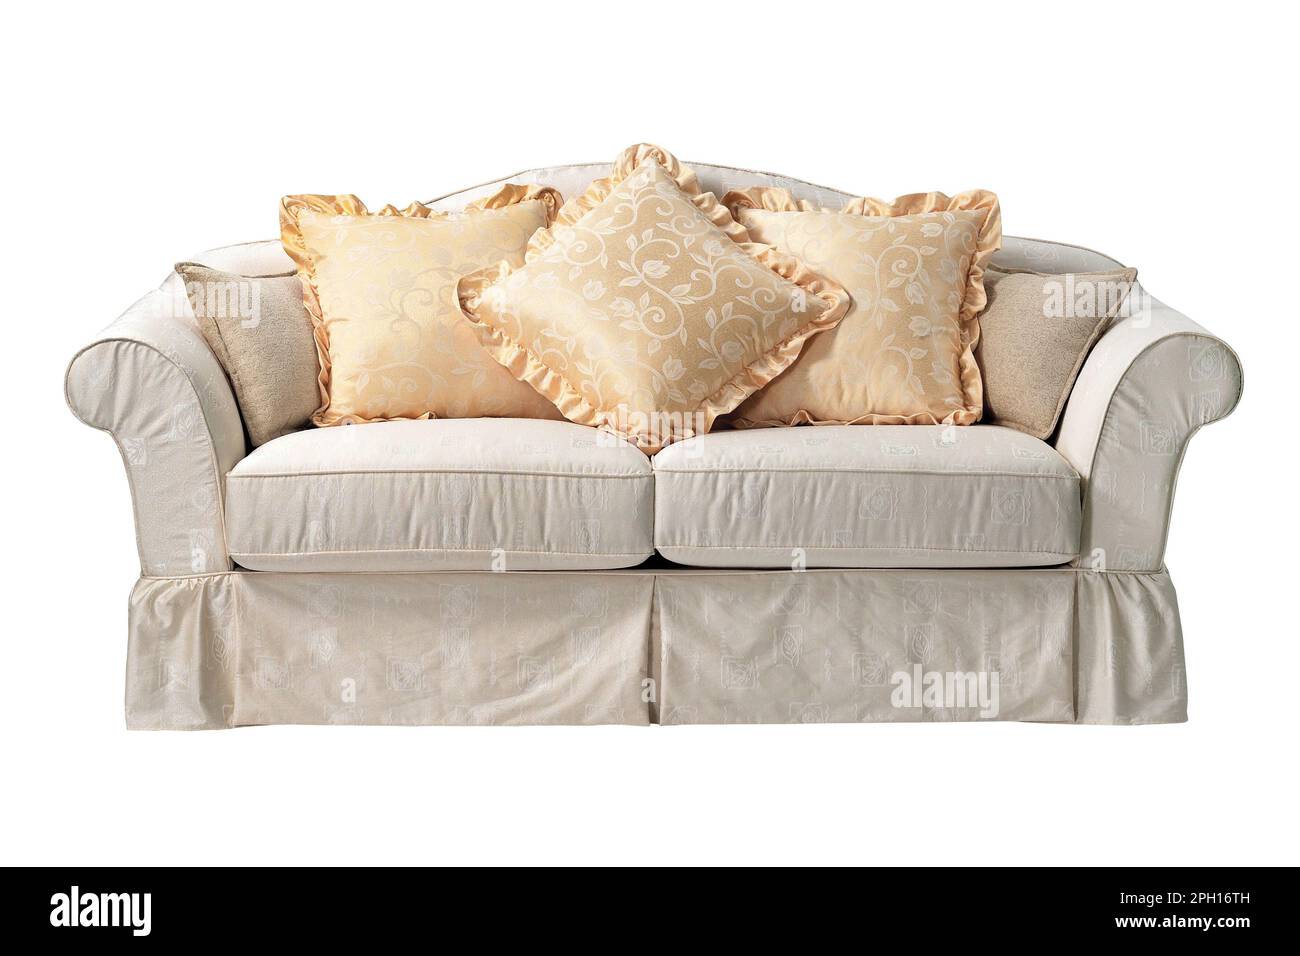 Canapé contemporain à motifs floraux, isolé sur fond blanc Banque D'Images